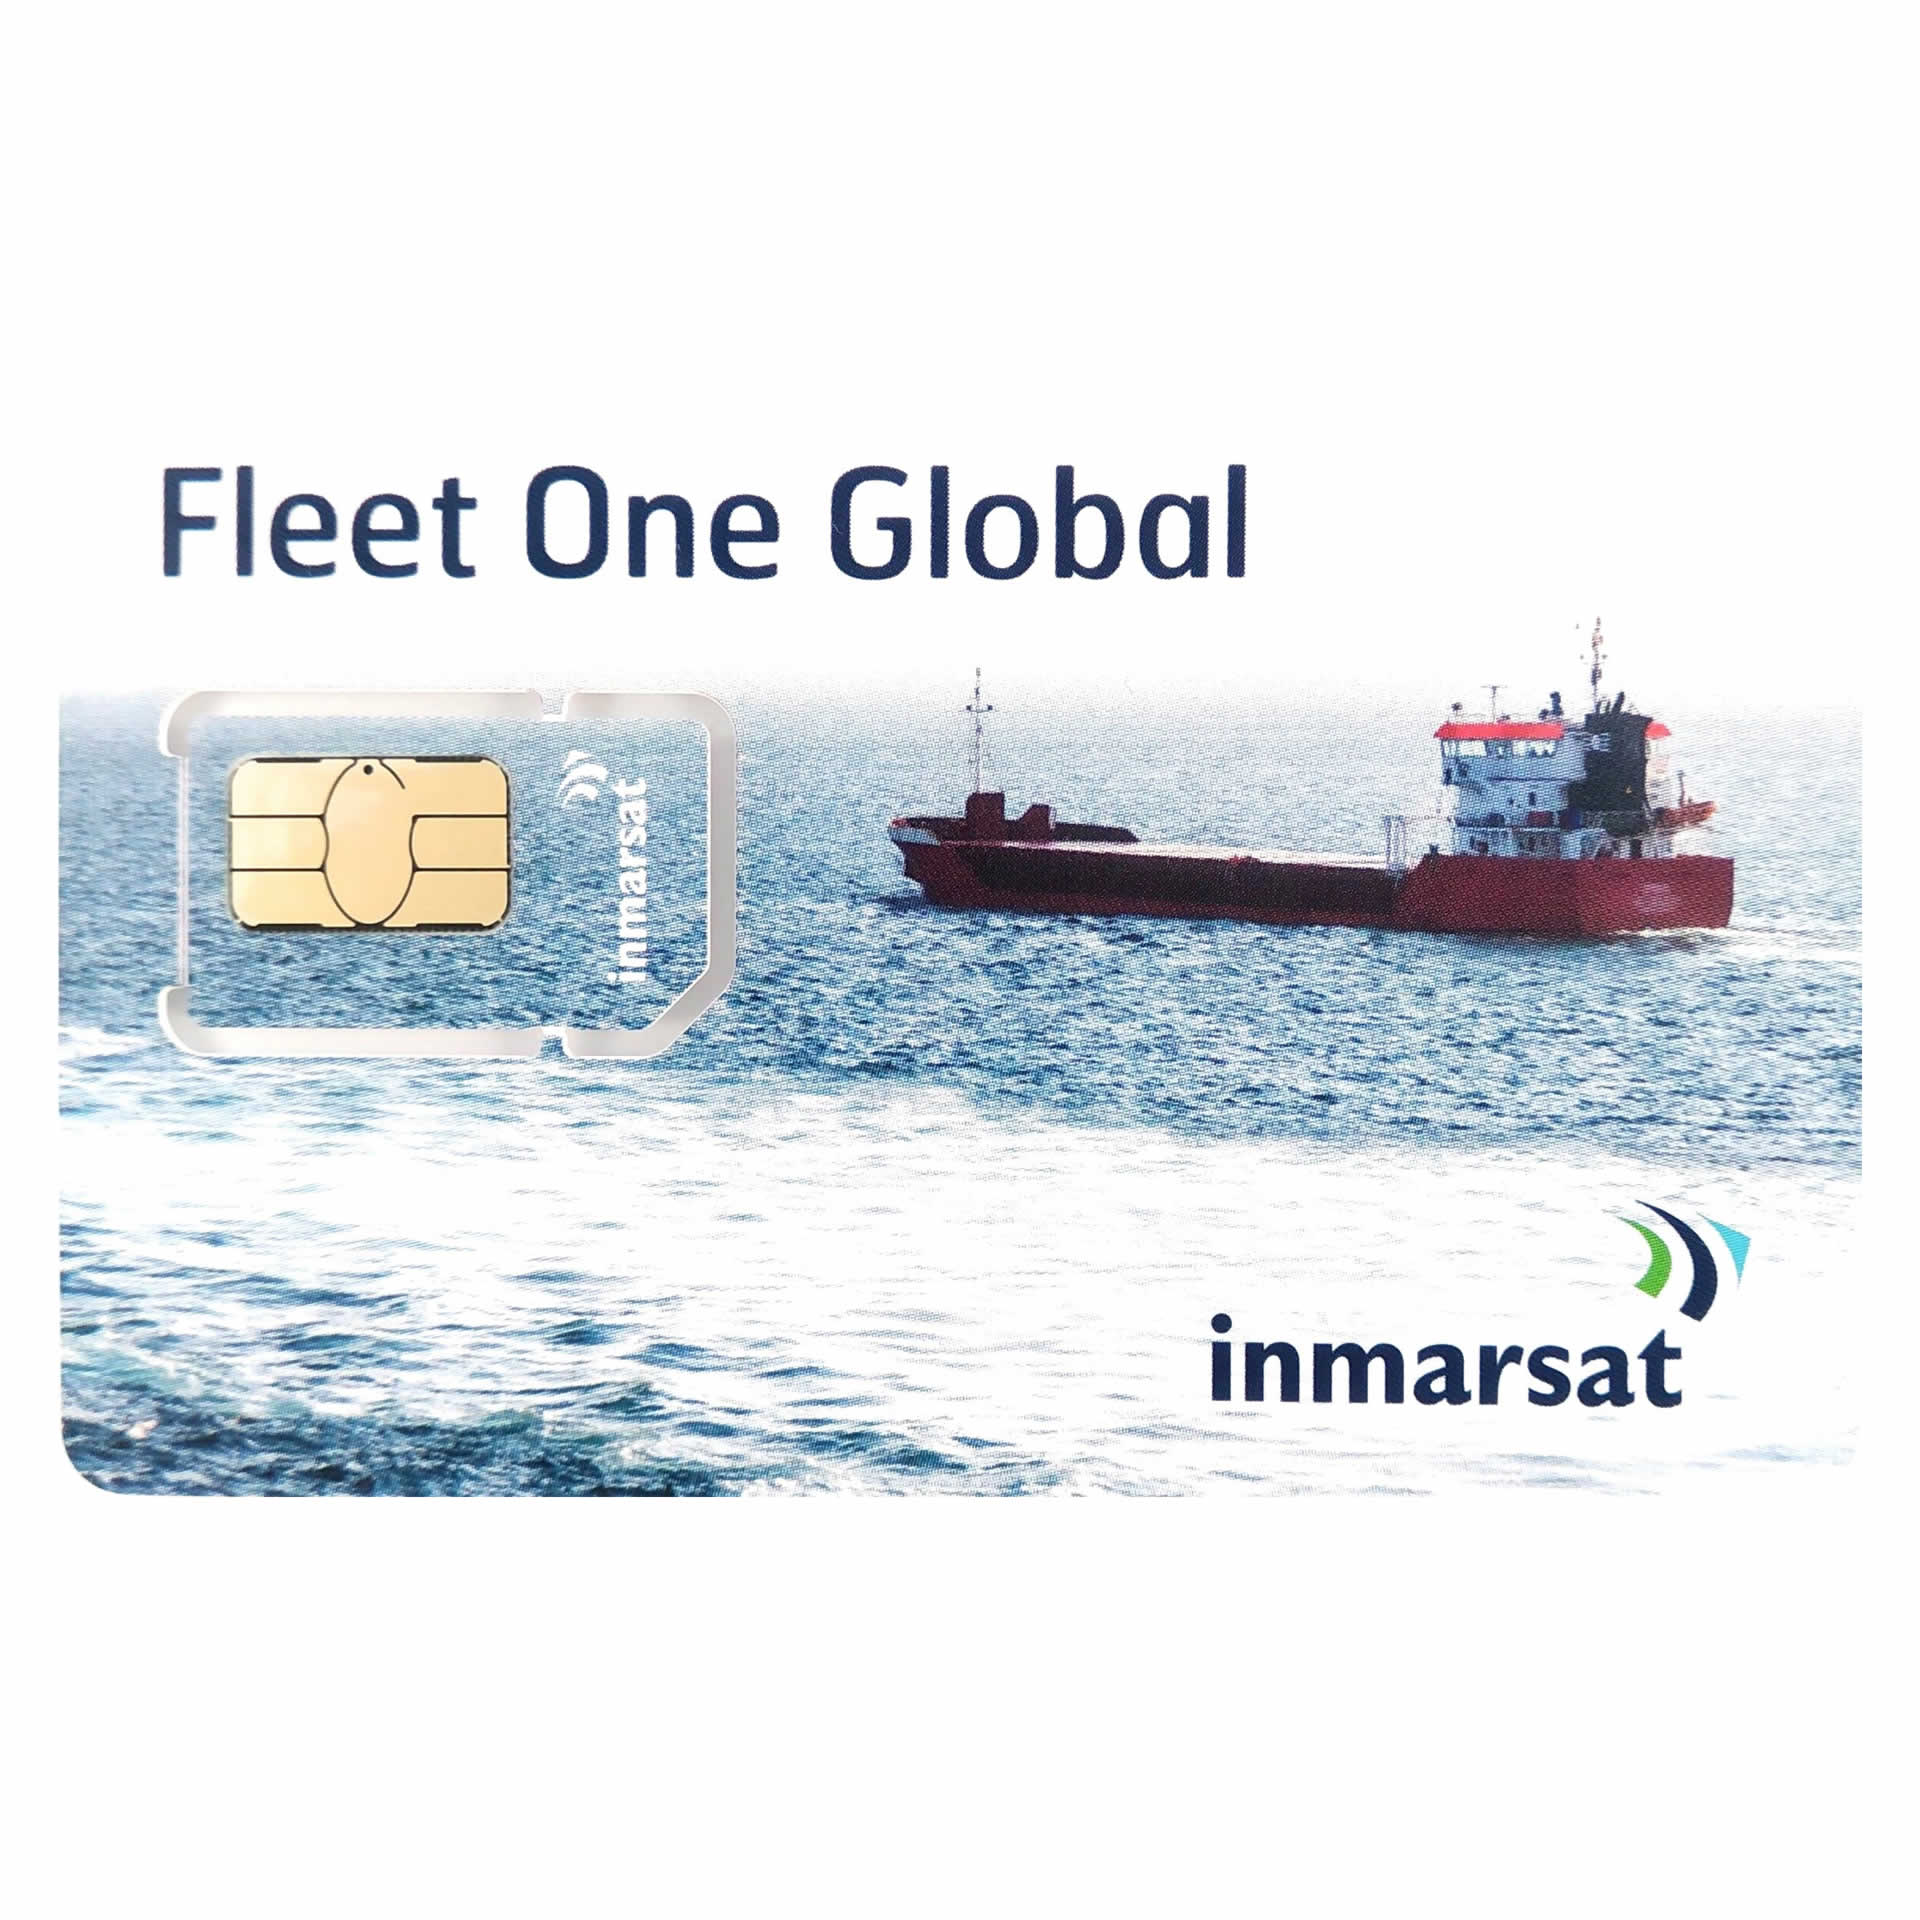 INMARSAT GLOBAL FLEET ONE Prepaid Reloadable Card - 500 UNITS - 90 DAYS